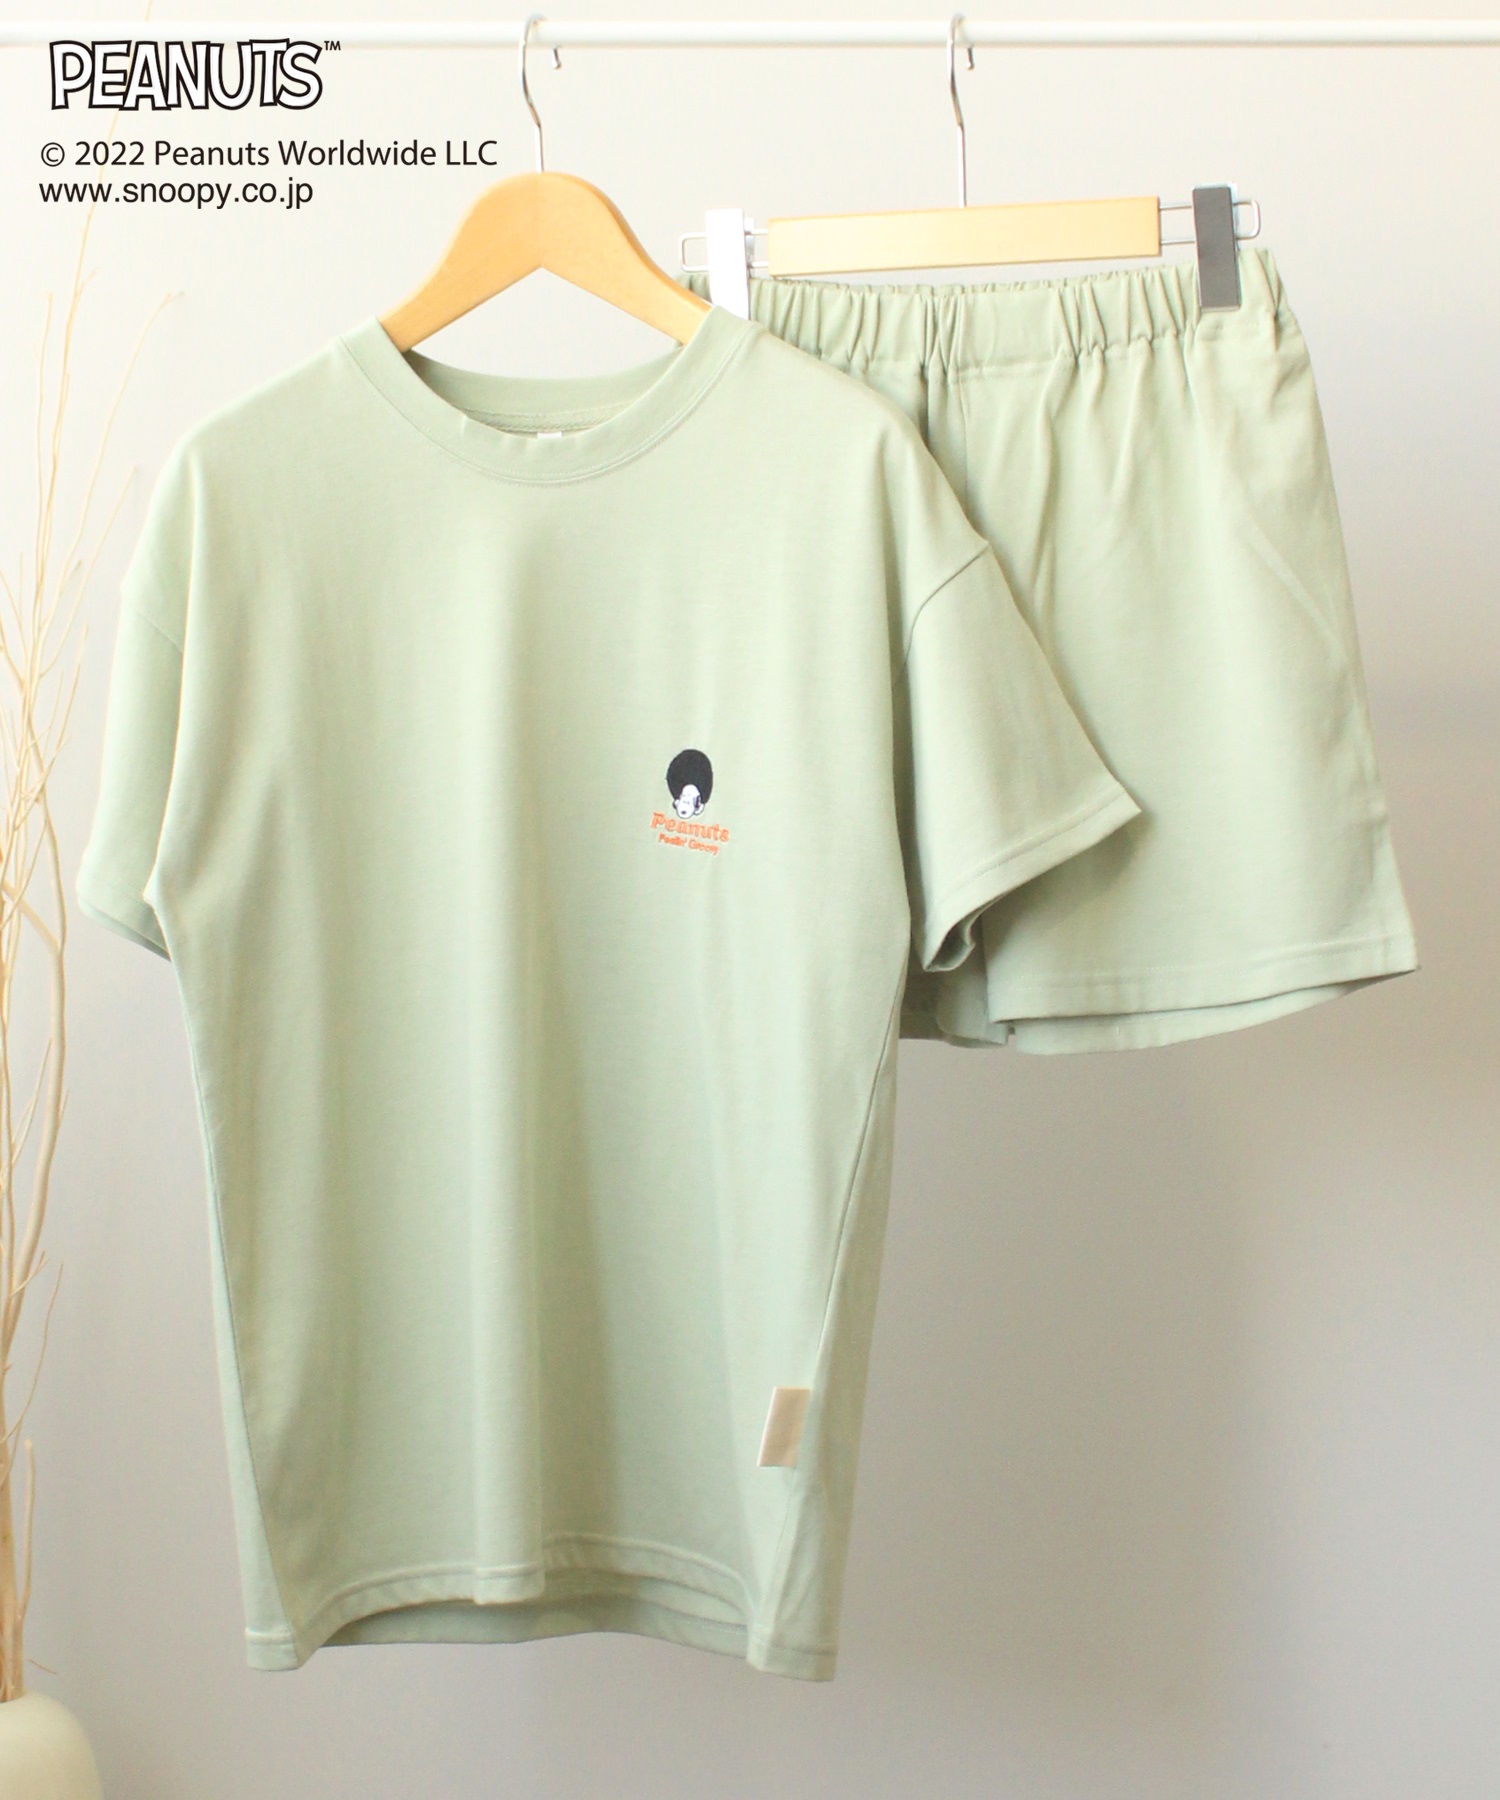 【SNOOPY】スヌーピーバックプリント Tシャツ&ショートパンツセットアップ(61グリーン-Ｍ-0582038-61-031)